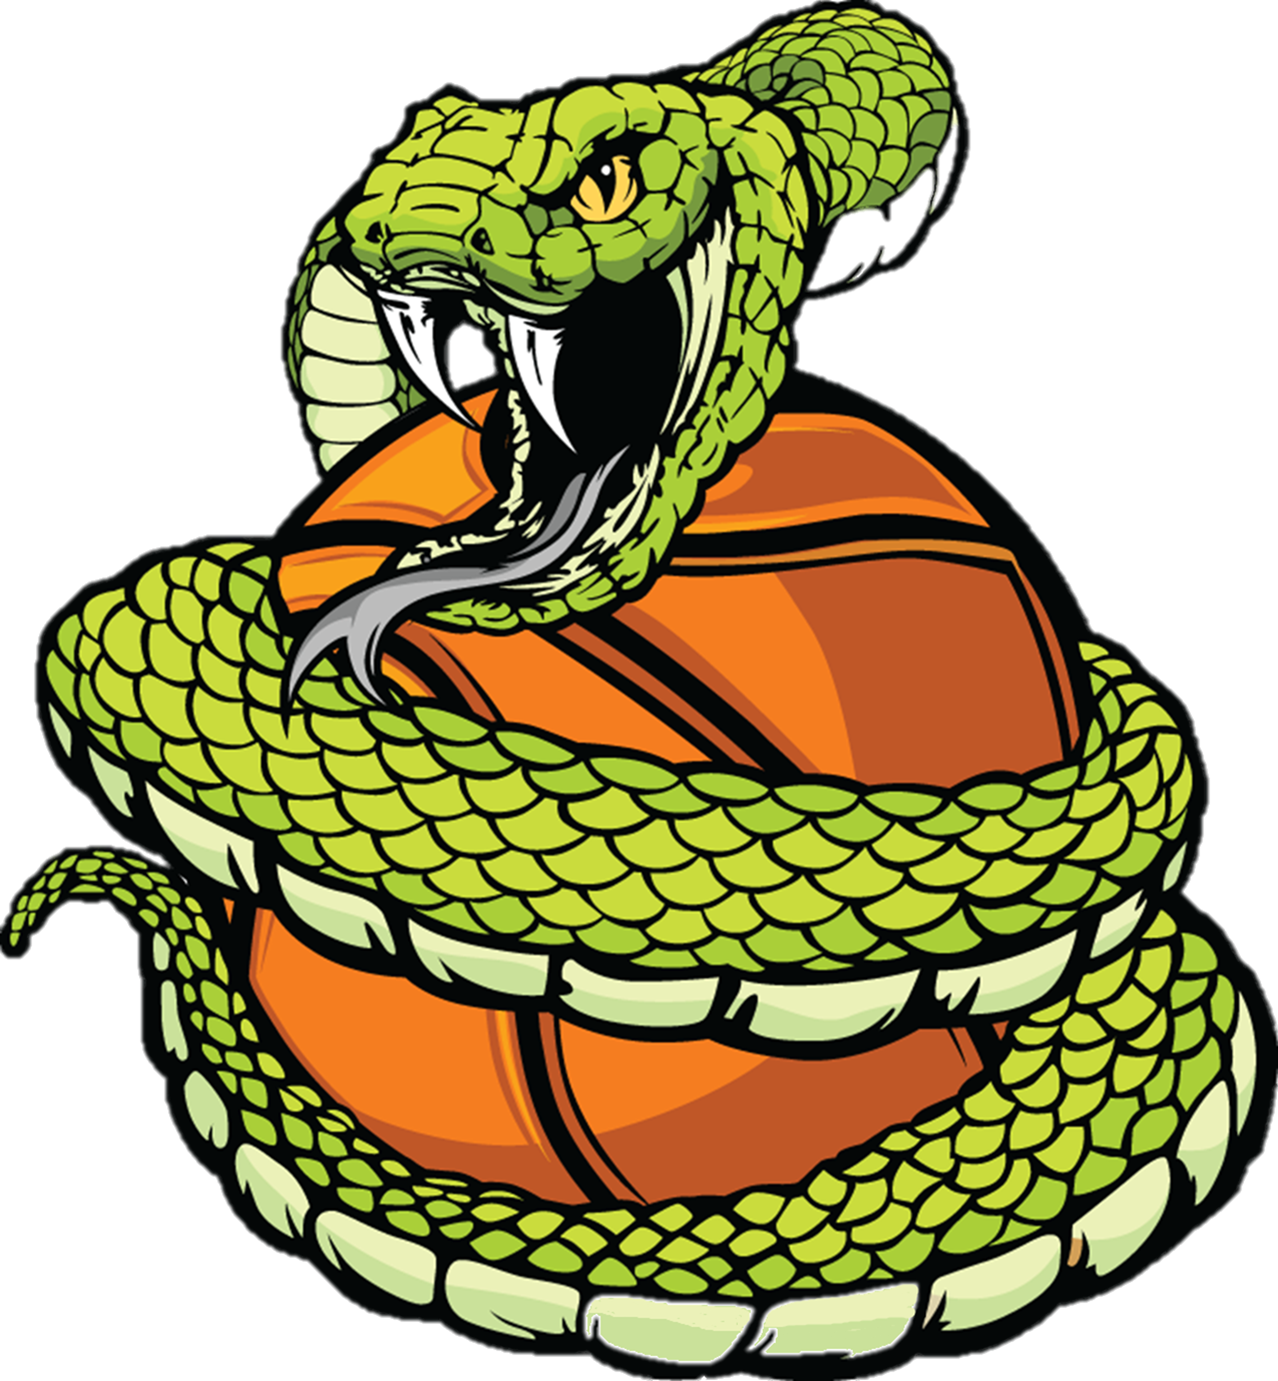 Green clipart cobra. Basketball league tournament brackets